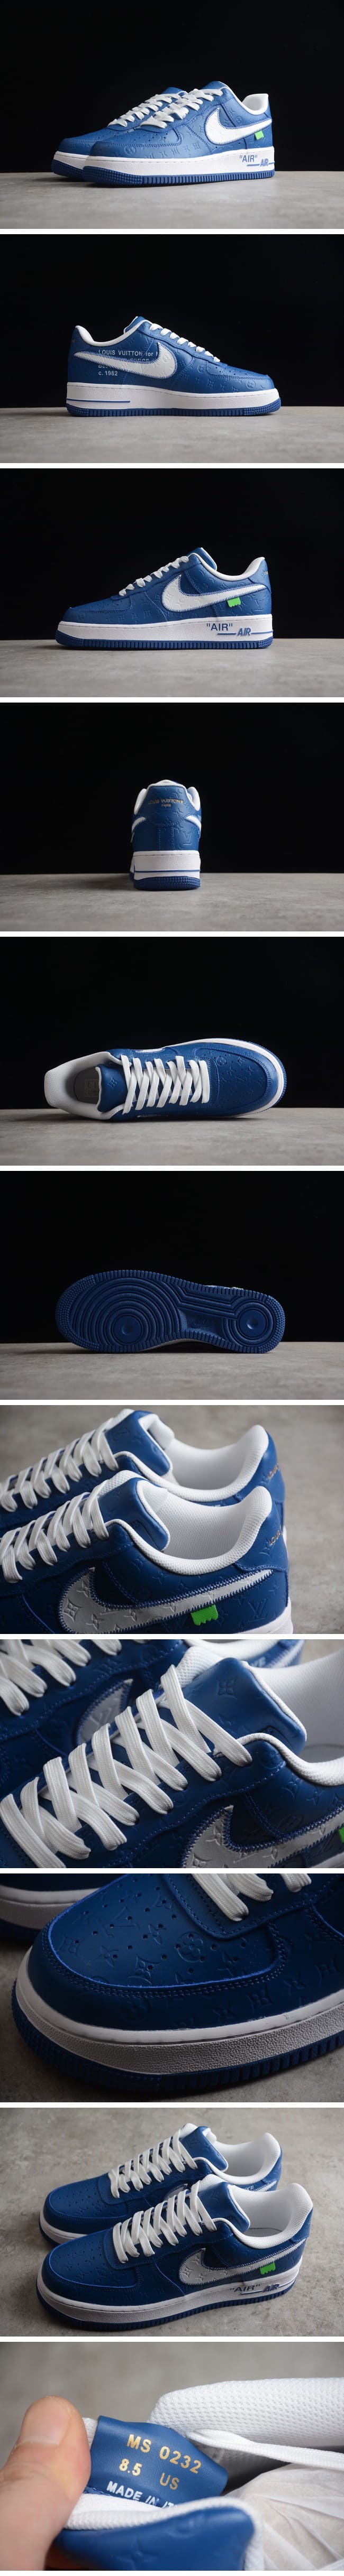 【期間限定】Louis Vuitton Nike Air Force 1 Low By Virgil Abloh Blue ルイ・ヴィトン x ナイキエアフォース1 ローバイヴァージルアブロー ブルー